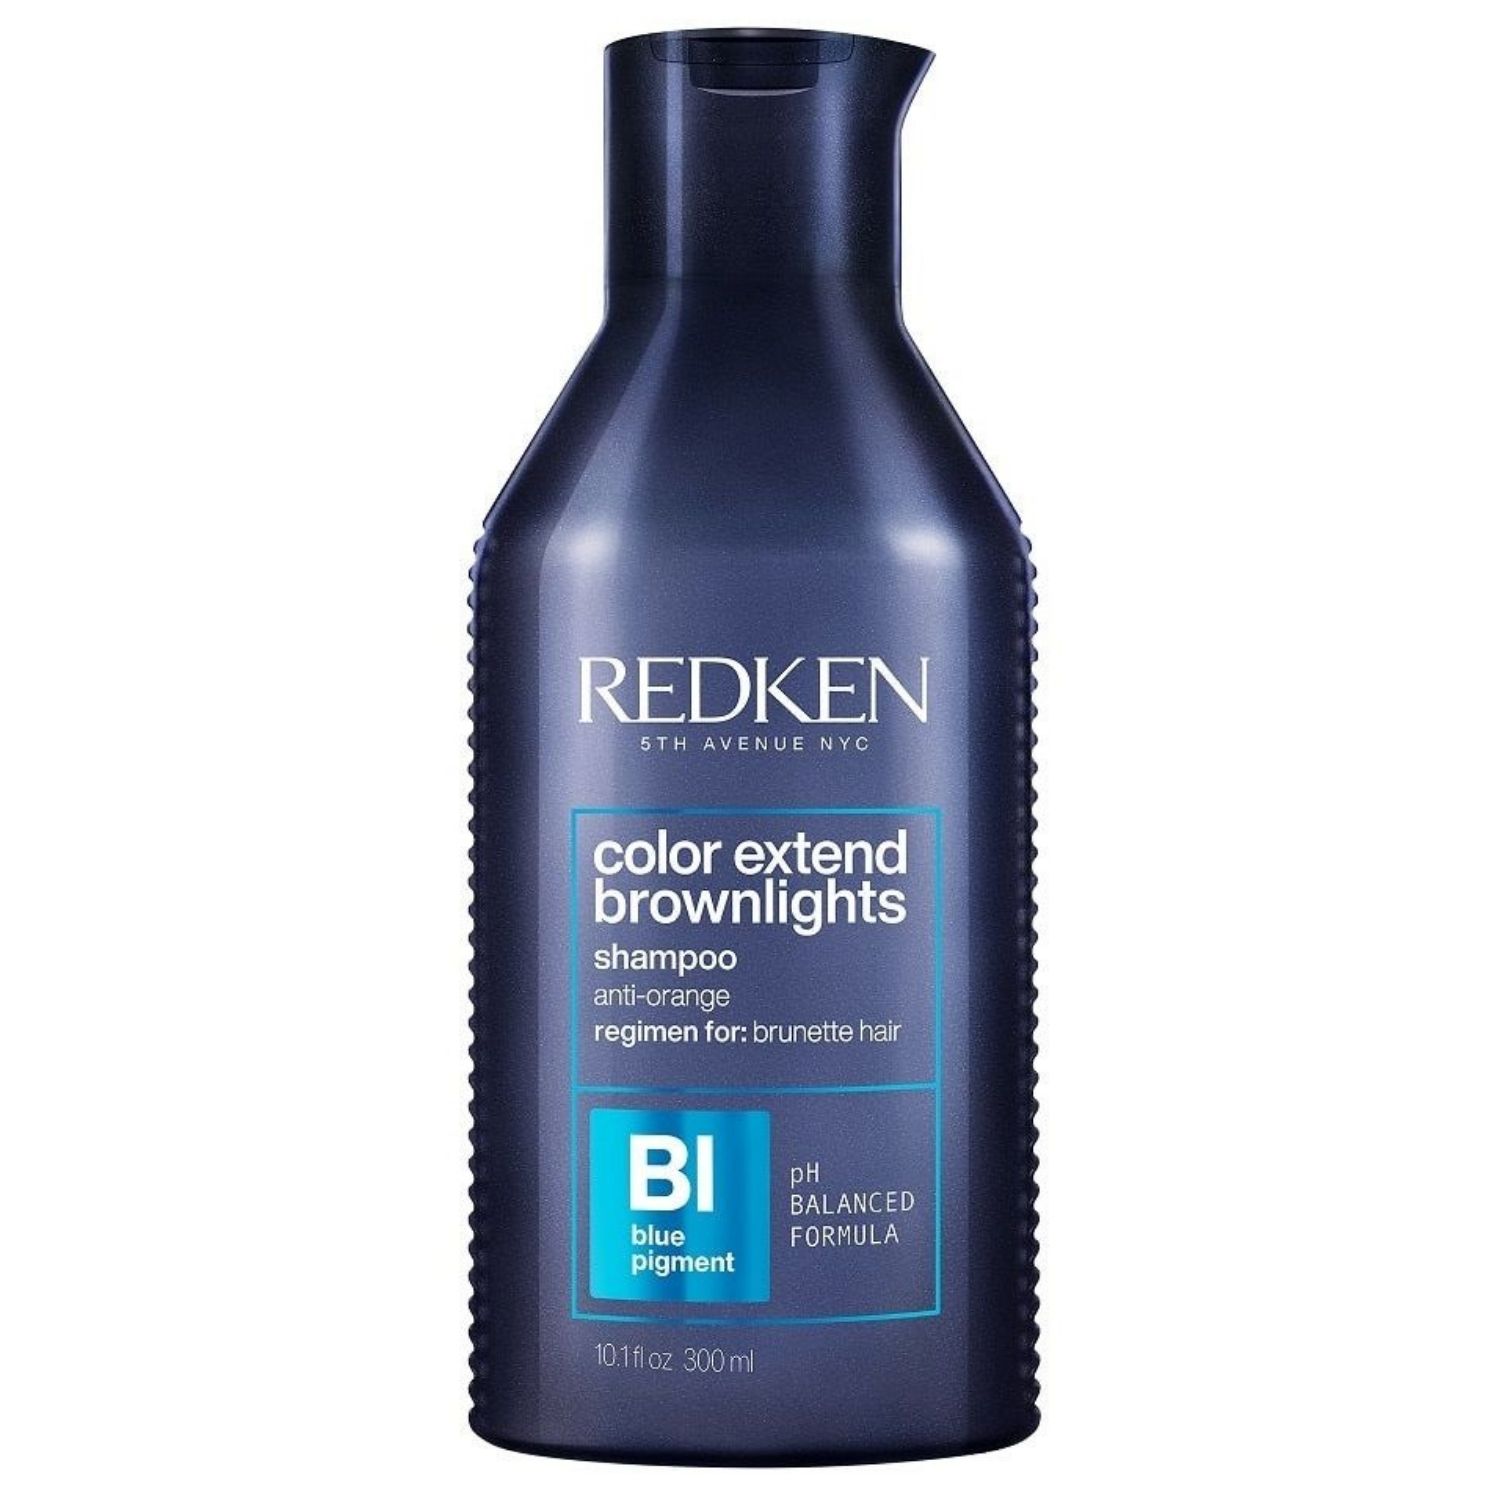 Redken Color Extend Brownlights Shampoo for Brunette Hair 10.1 oz - image 1 of 5